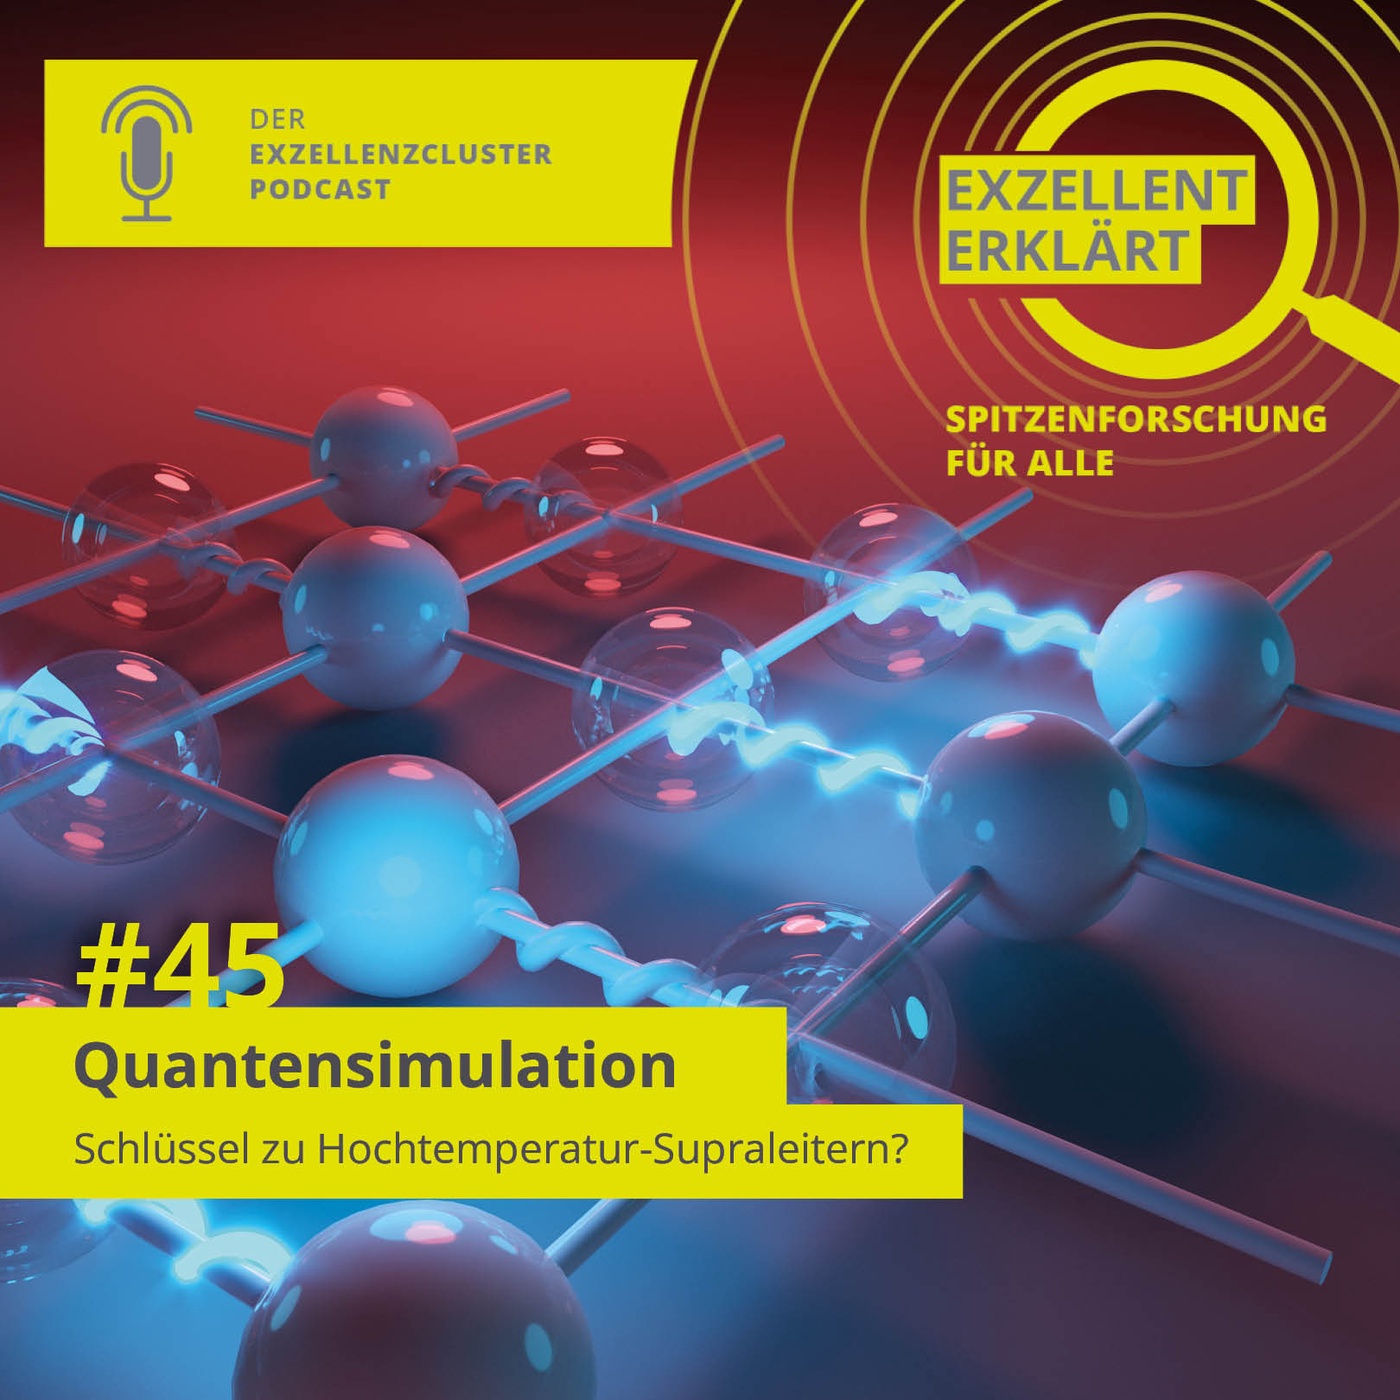 Quantensimulation: Schlüssel zu Hochtemperatur-Supraleitern?